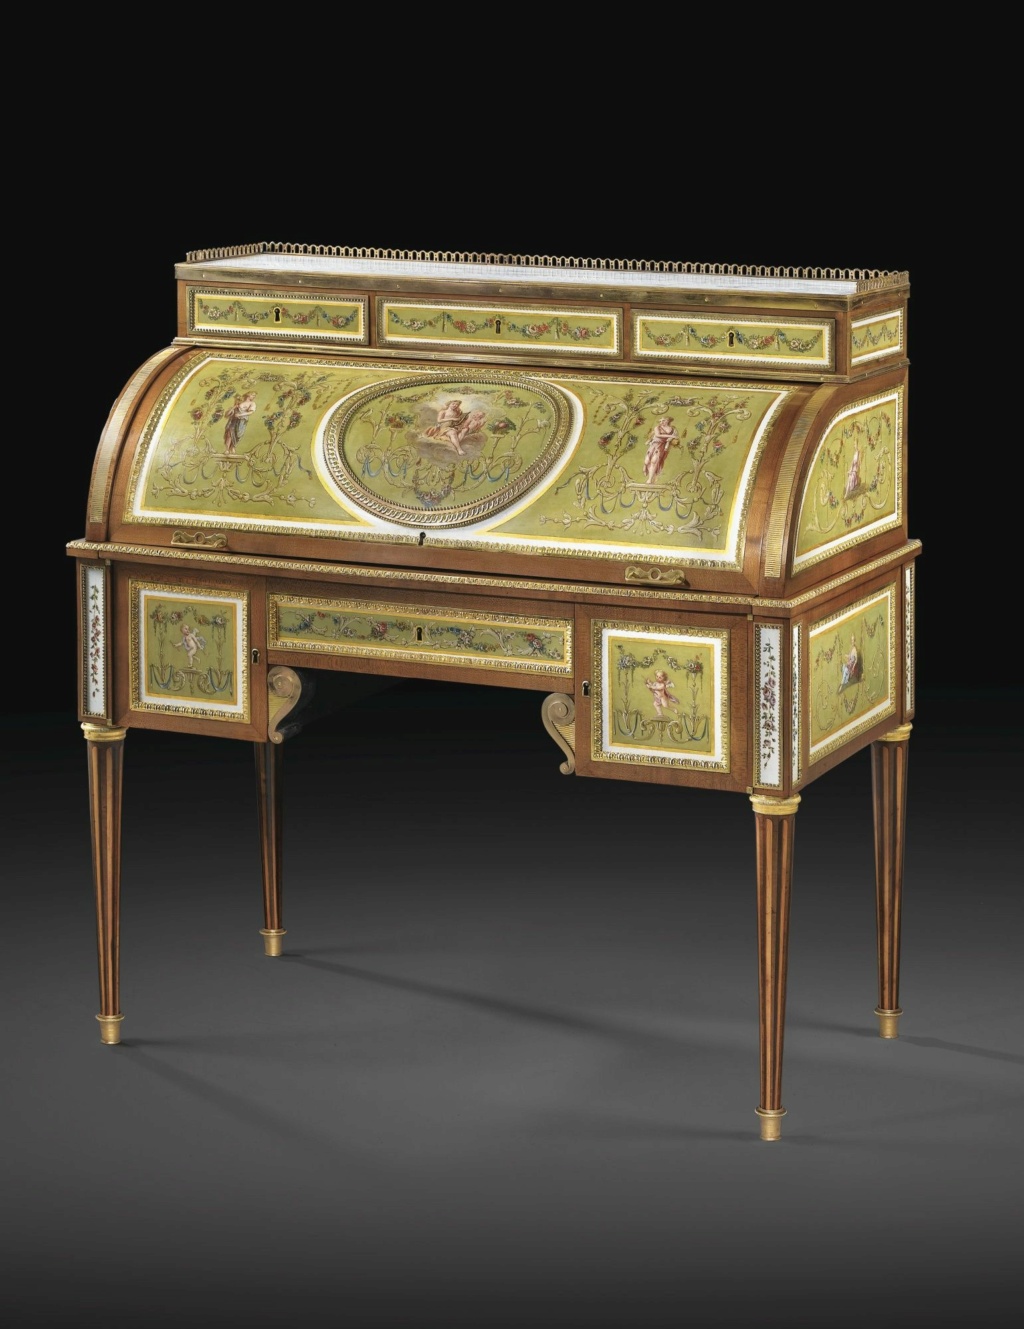 Mobilier du XVIIIe siècle décoré de tôle peinte et vernie 0307ae10